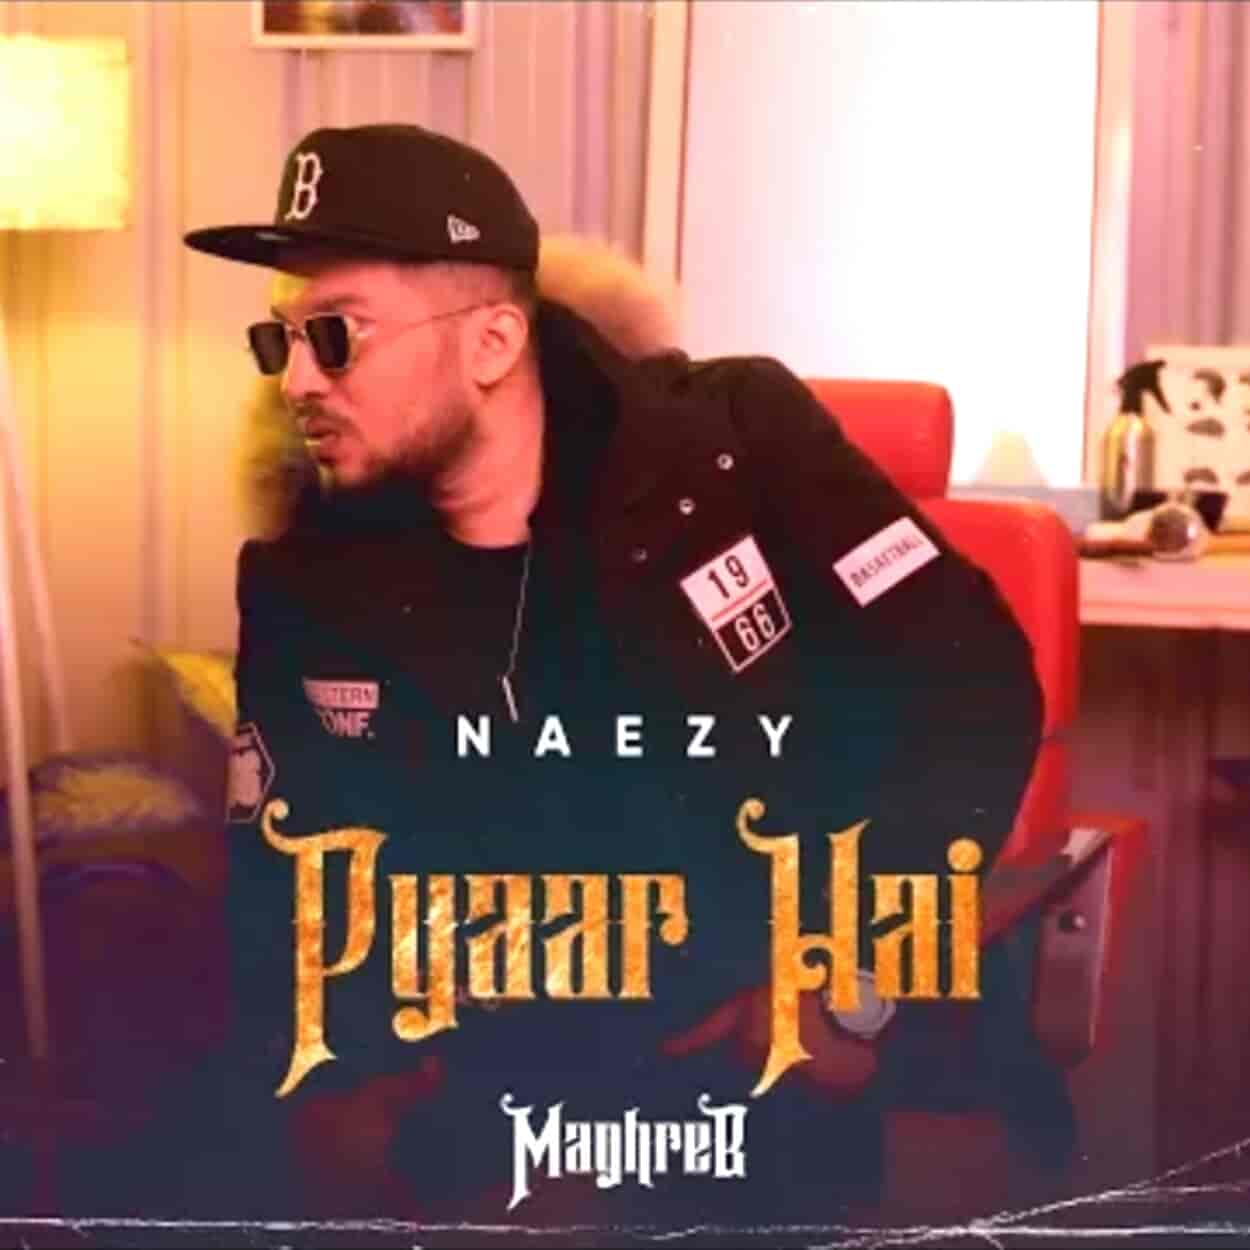 Pyaar Hai Lyrics Naezy